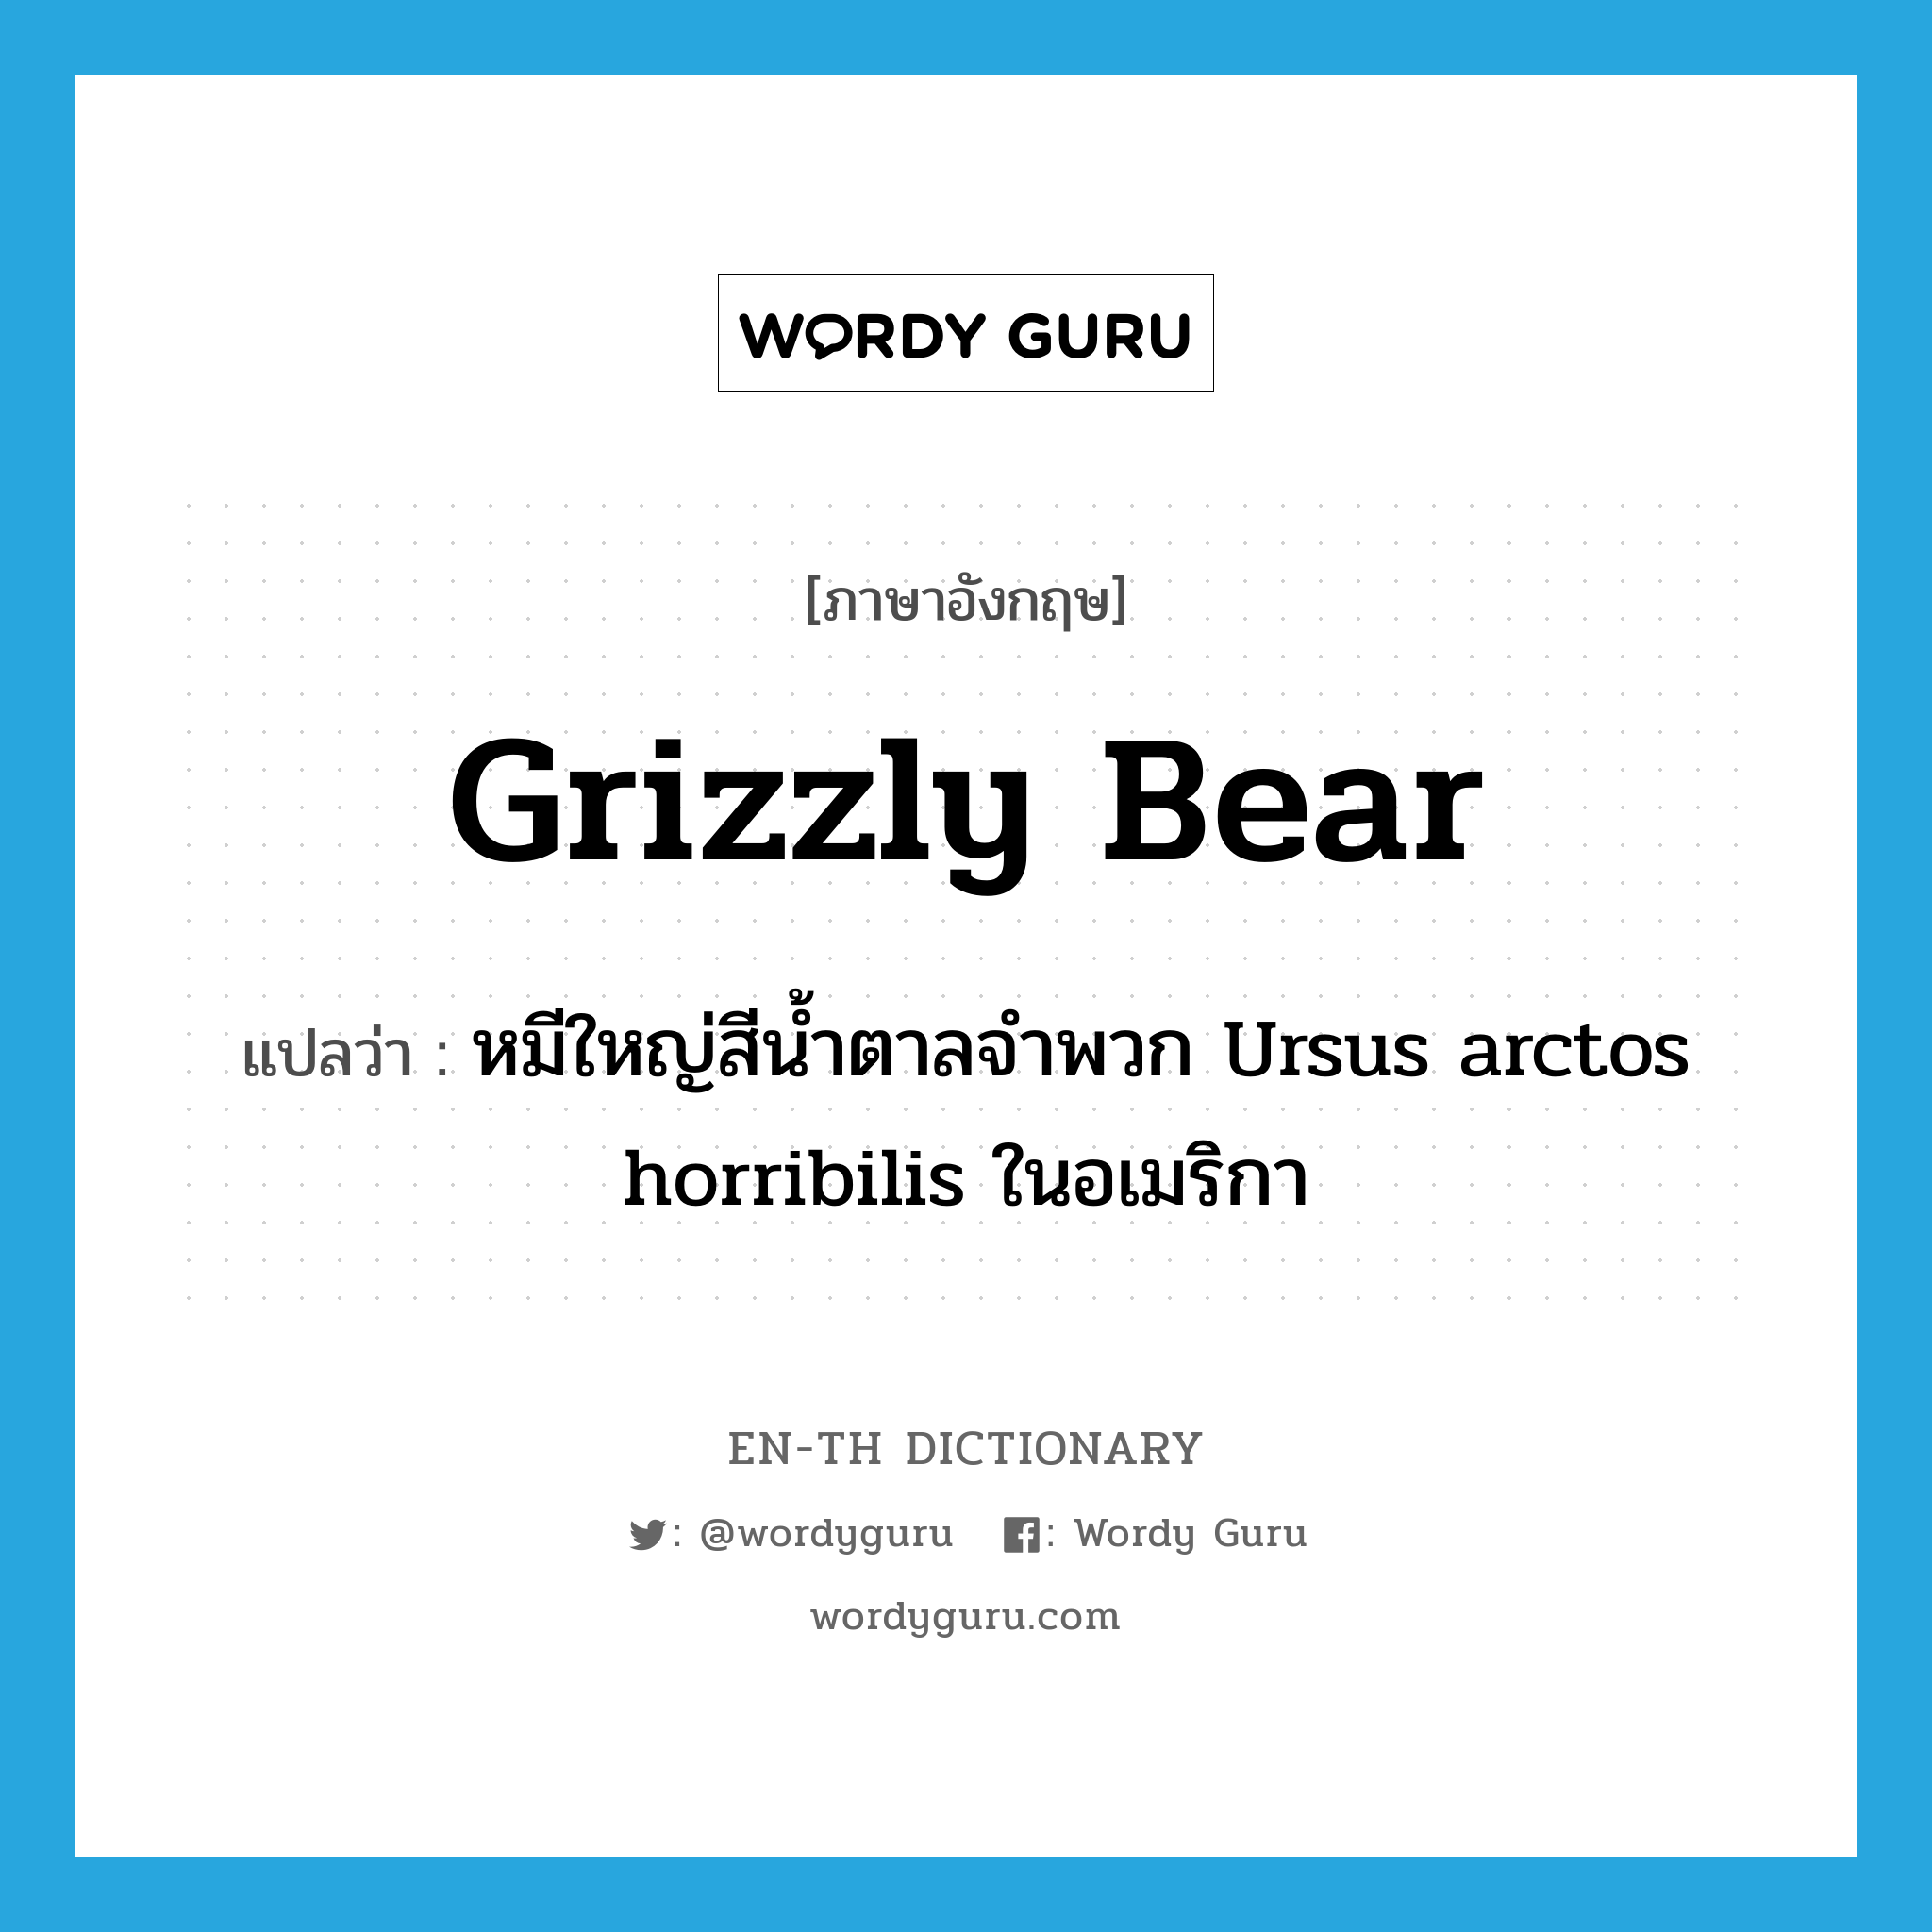 หมีใหญ่สีน้ำตาลจำพวก Ursus arctos horribilis ในอเมริกา ภาษาอังกฤษ?, คำศัพท์ภาษาอังกฤษ หมีใหญ่สีน้ำตาลจำพวก Ursus arctos horribilis ในอเมริกา แปลว่า grizzly bear ประเภท N หมวด N